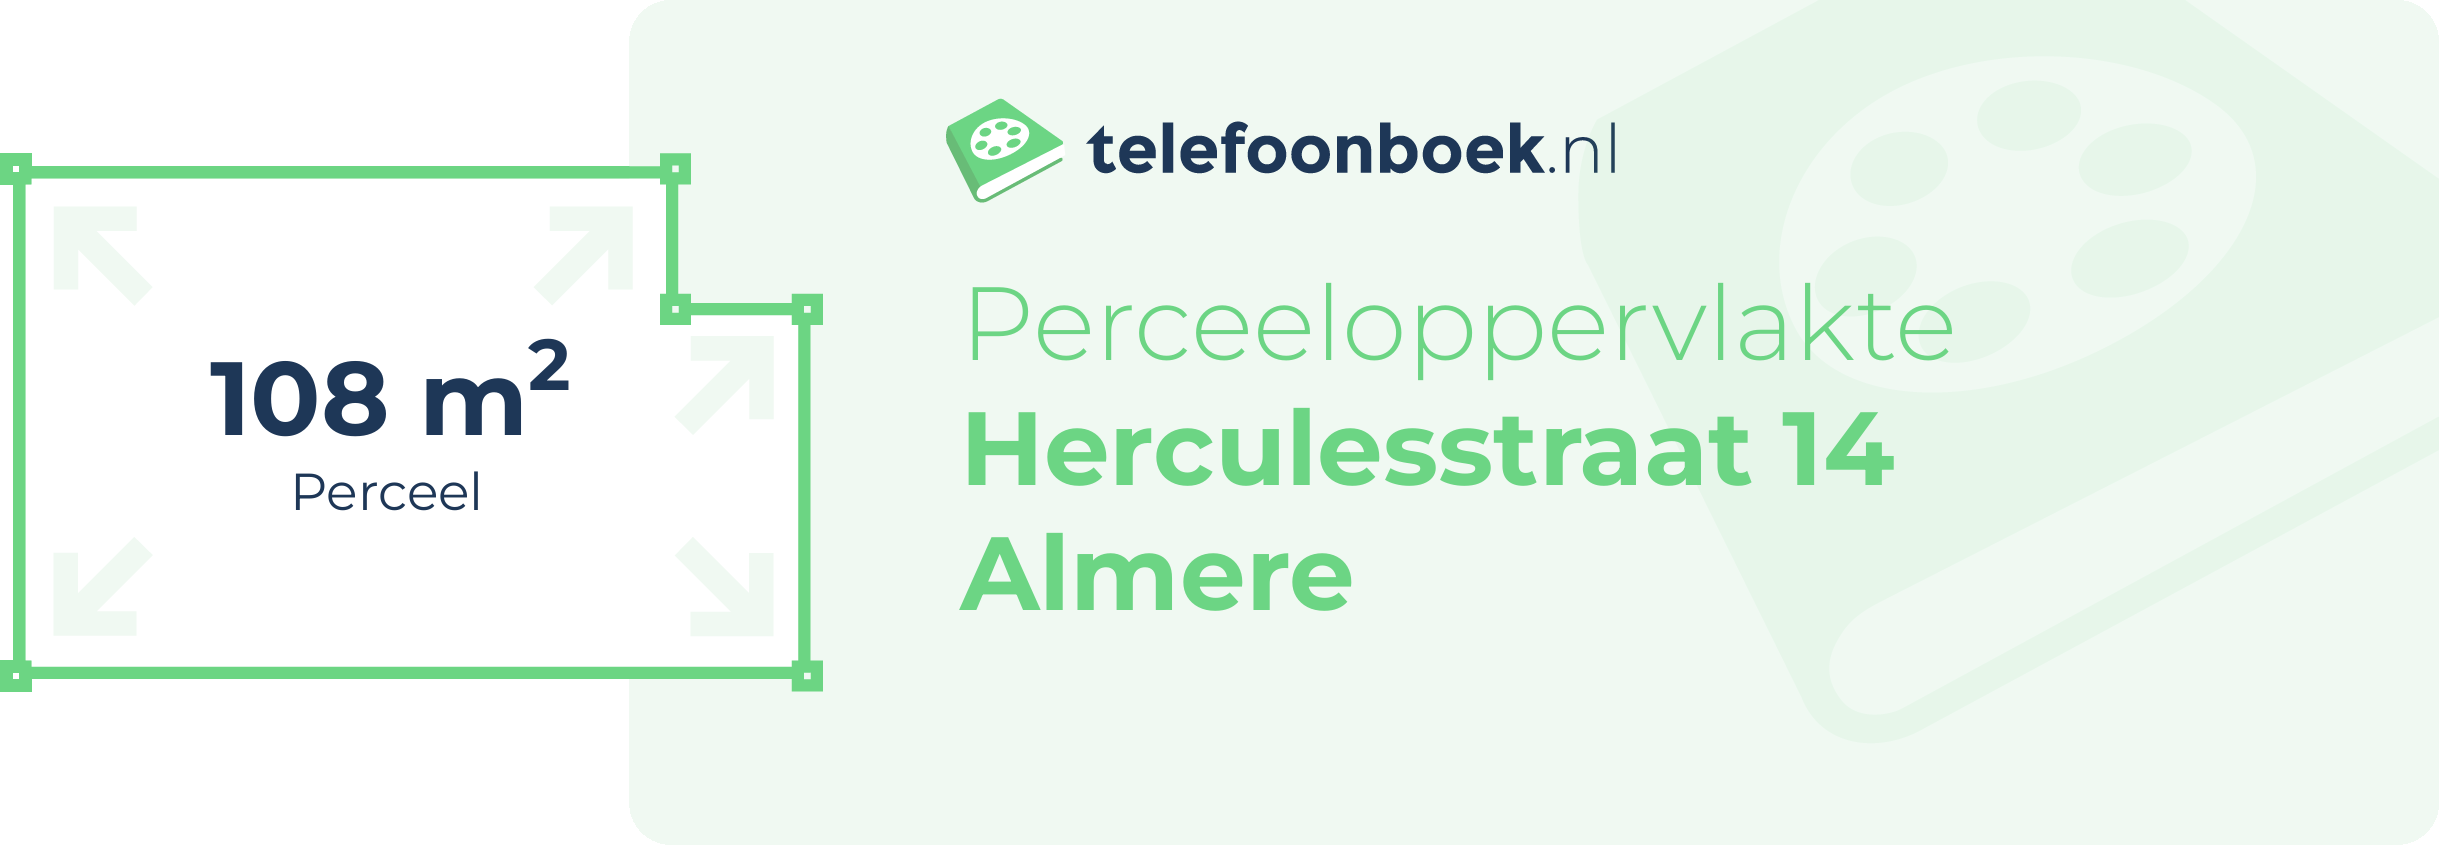 Perceeloppervlakte Herculesstraat 14 Almere